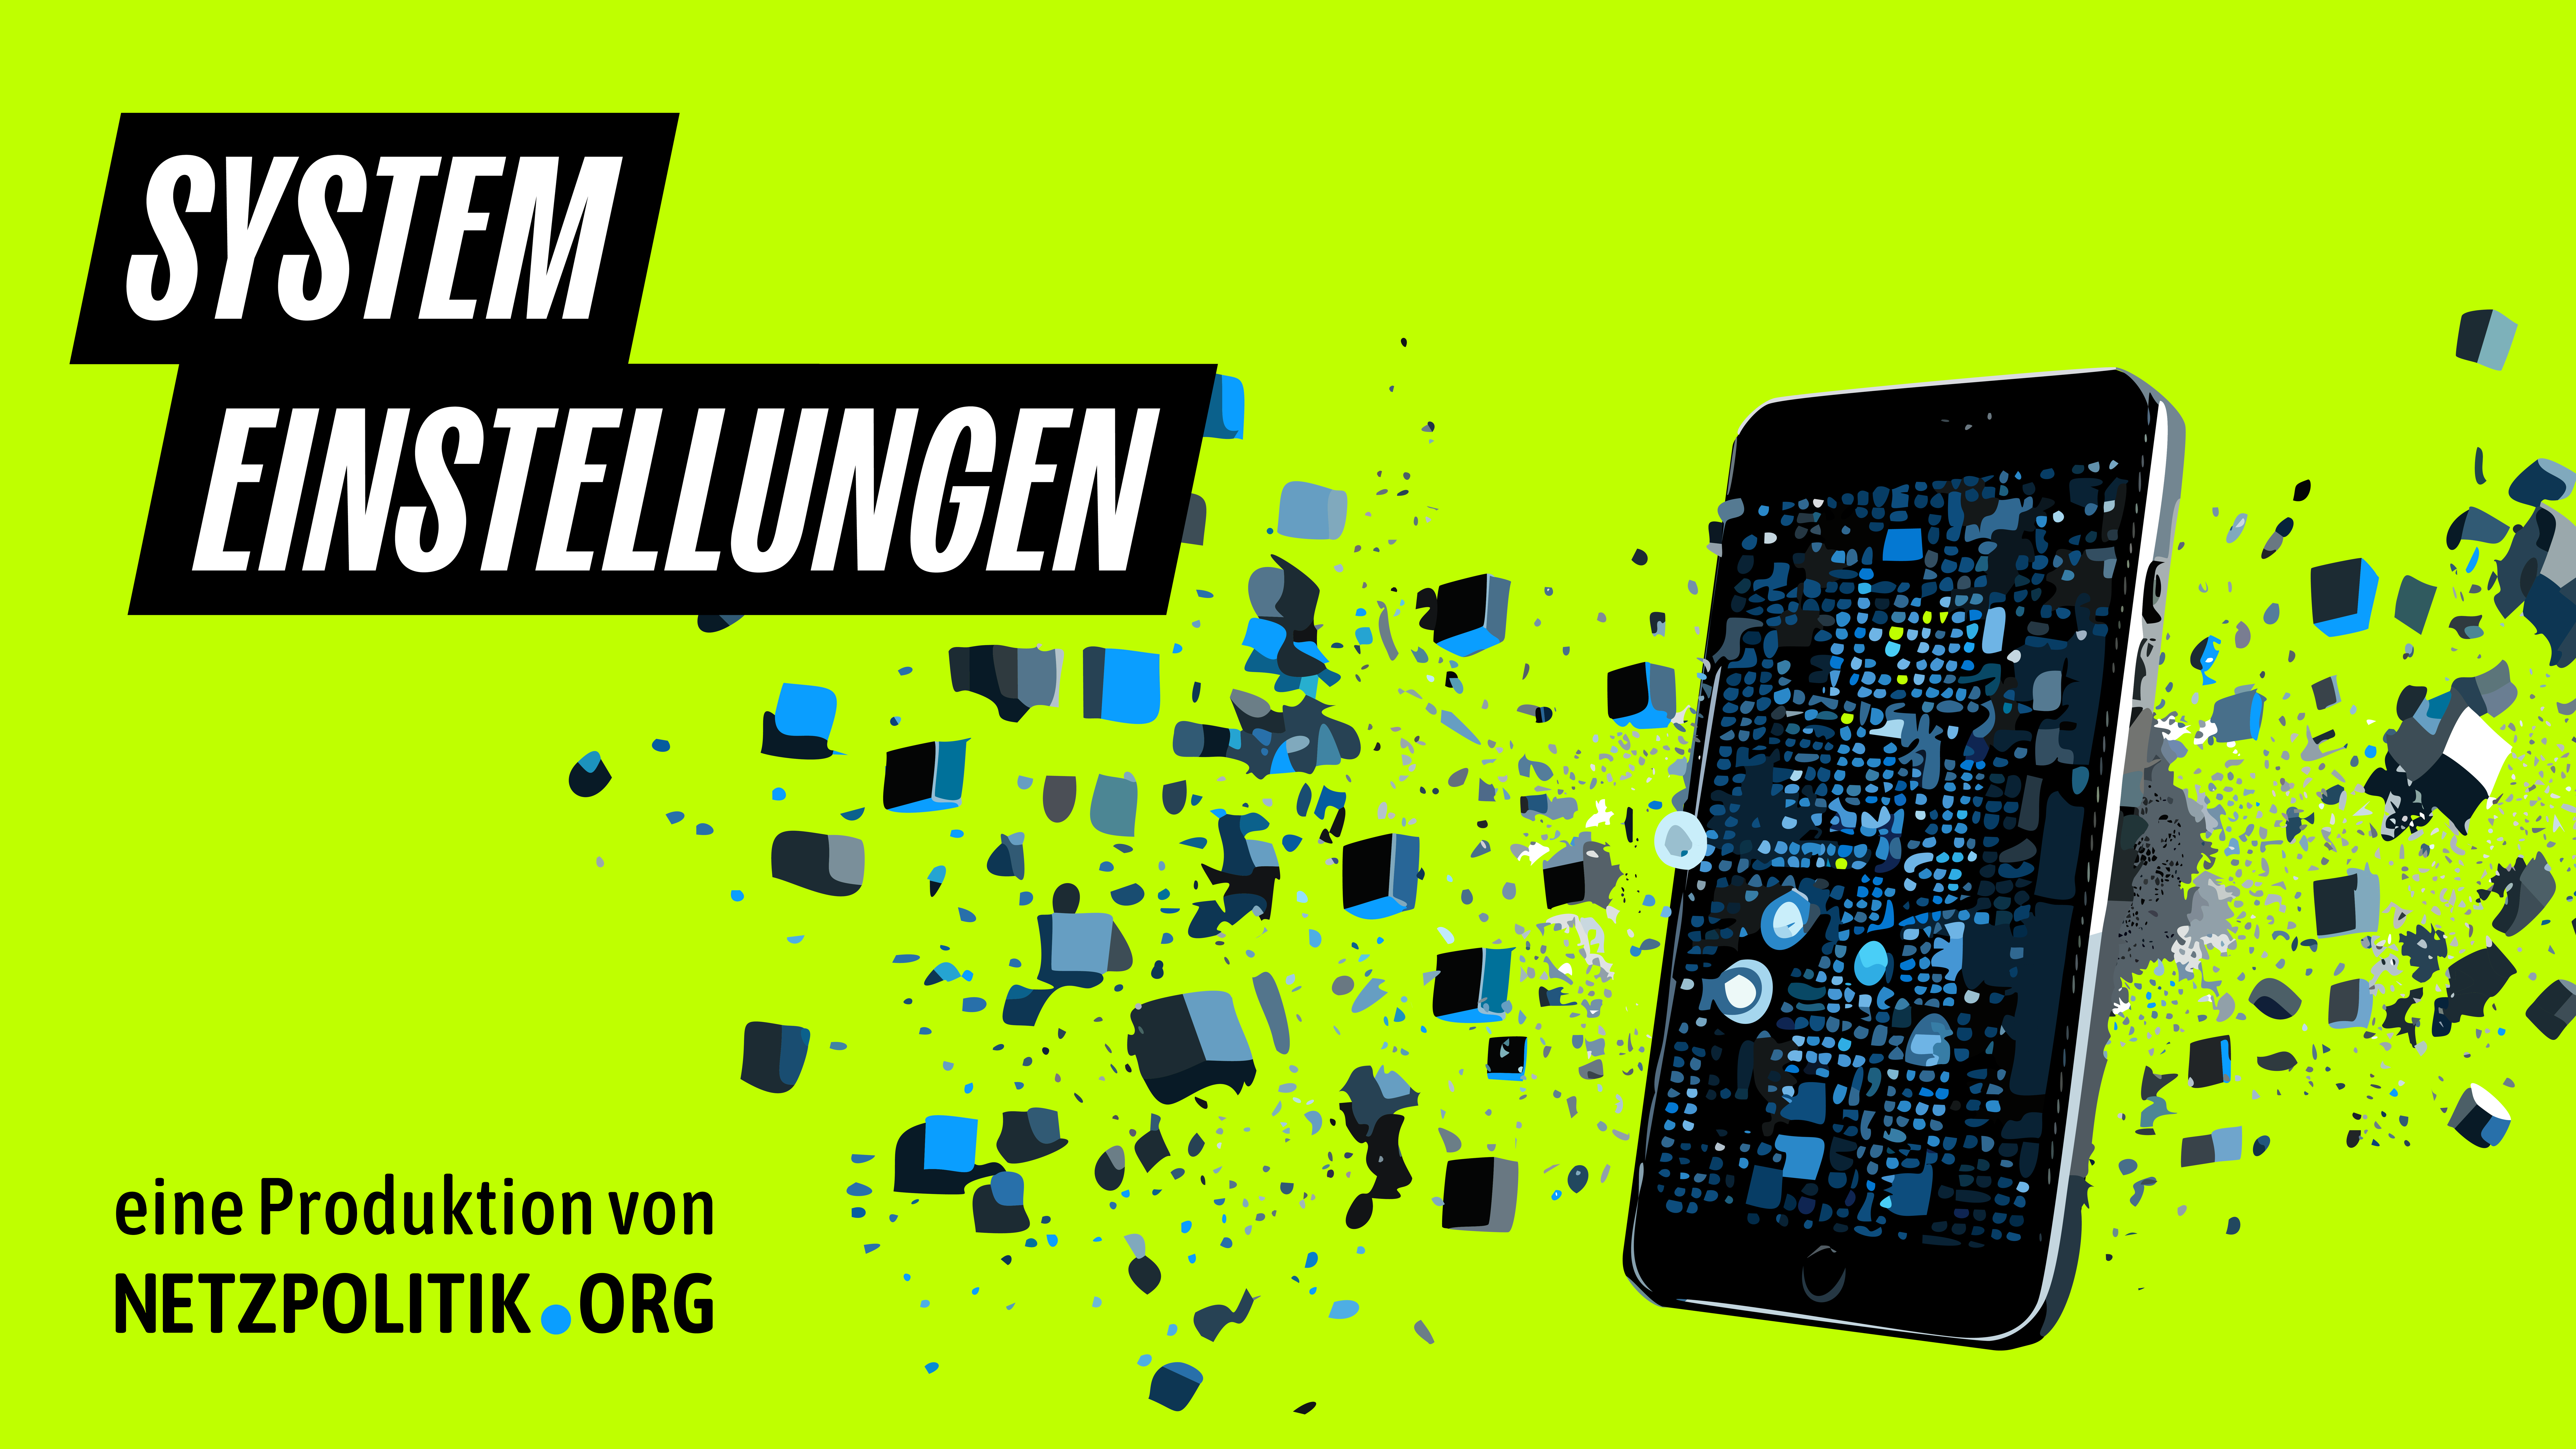 Das Cover der dritten Folge "Systemeinstellungen". Ein Smartphone auf einem grüngelben Hintergrund, das sich langsam aufzulösen scheint. Im linken unteren Eck steht "Eine Produktion von netzpolitik.org"